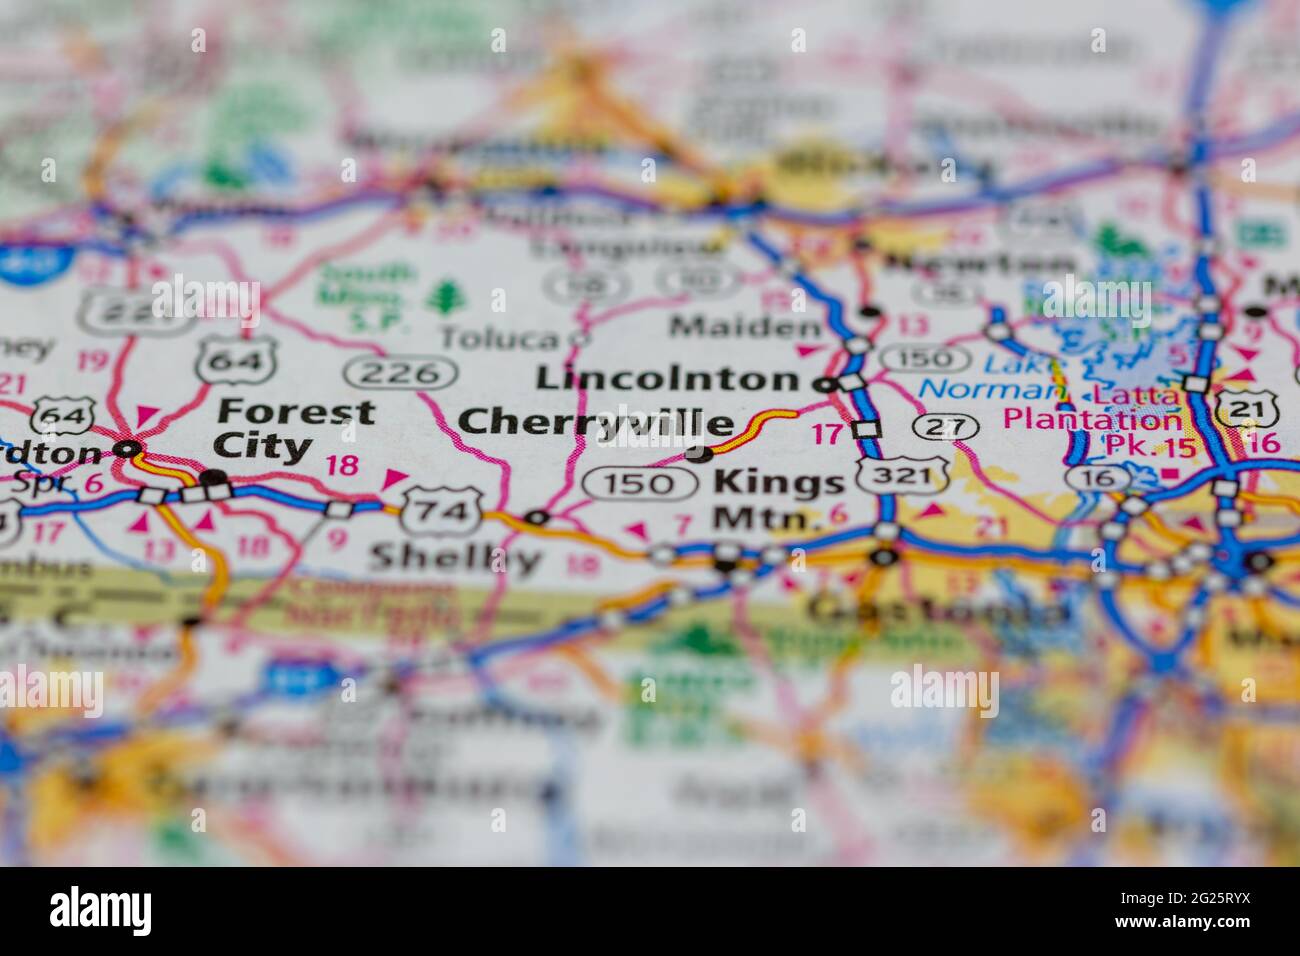 Cherryville Caroline du Nord Etats-Unis indiqué sur une carte routière ou une carte de géographie Banque D'Images